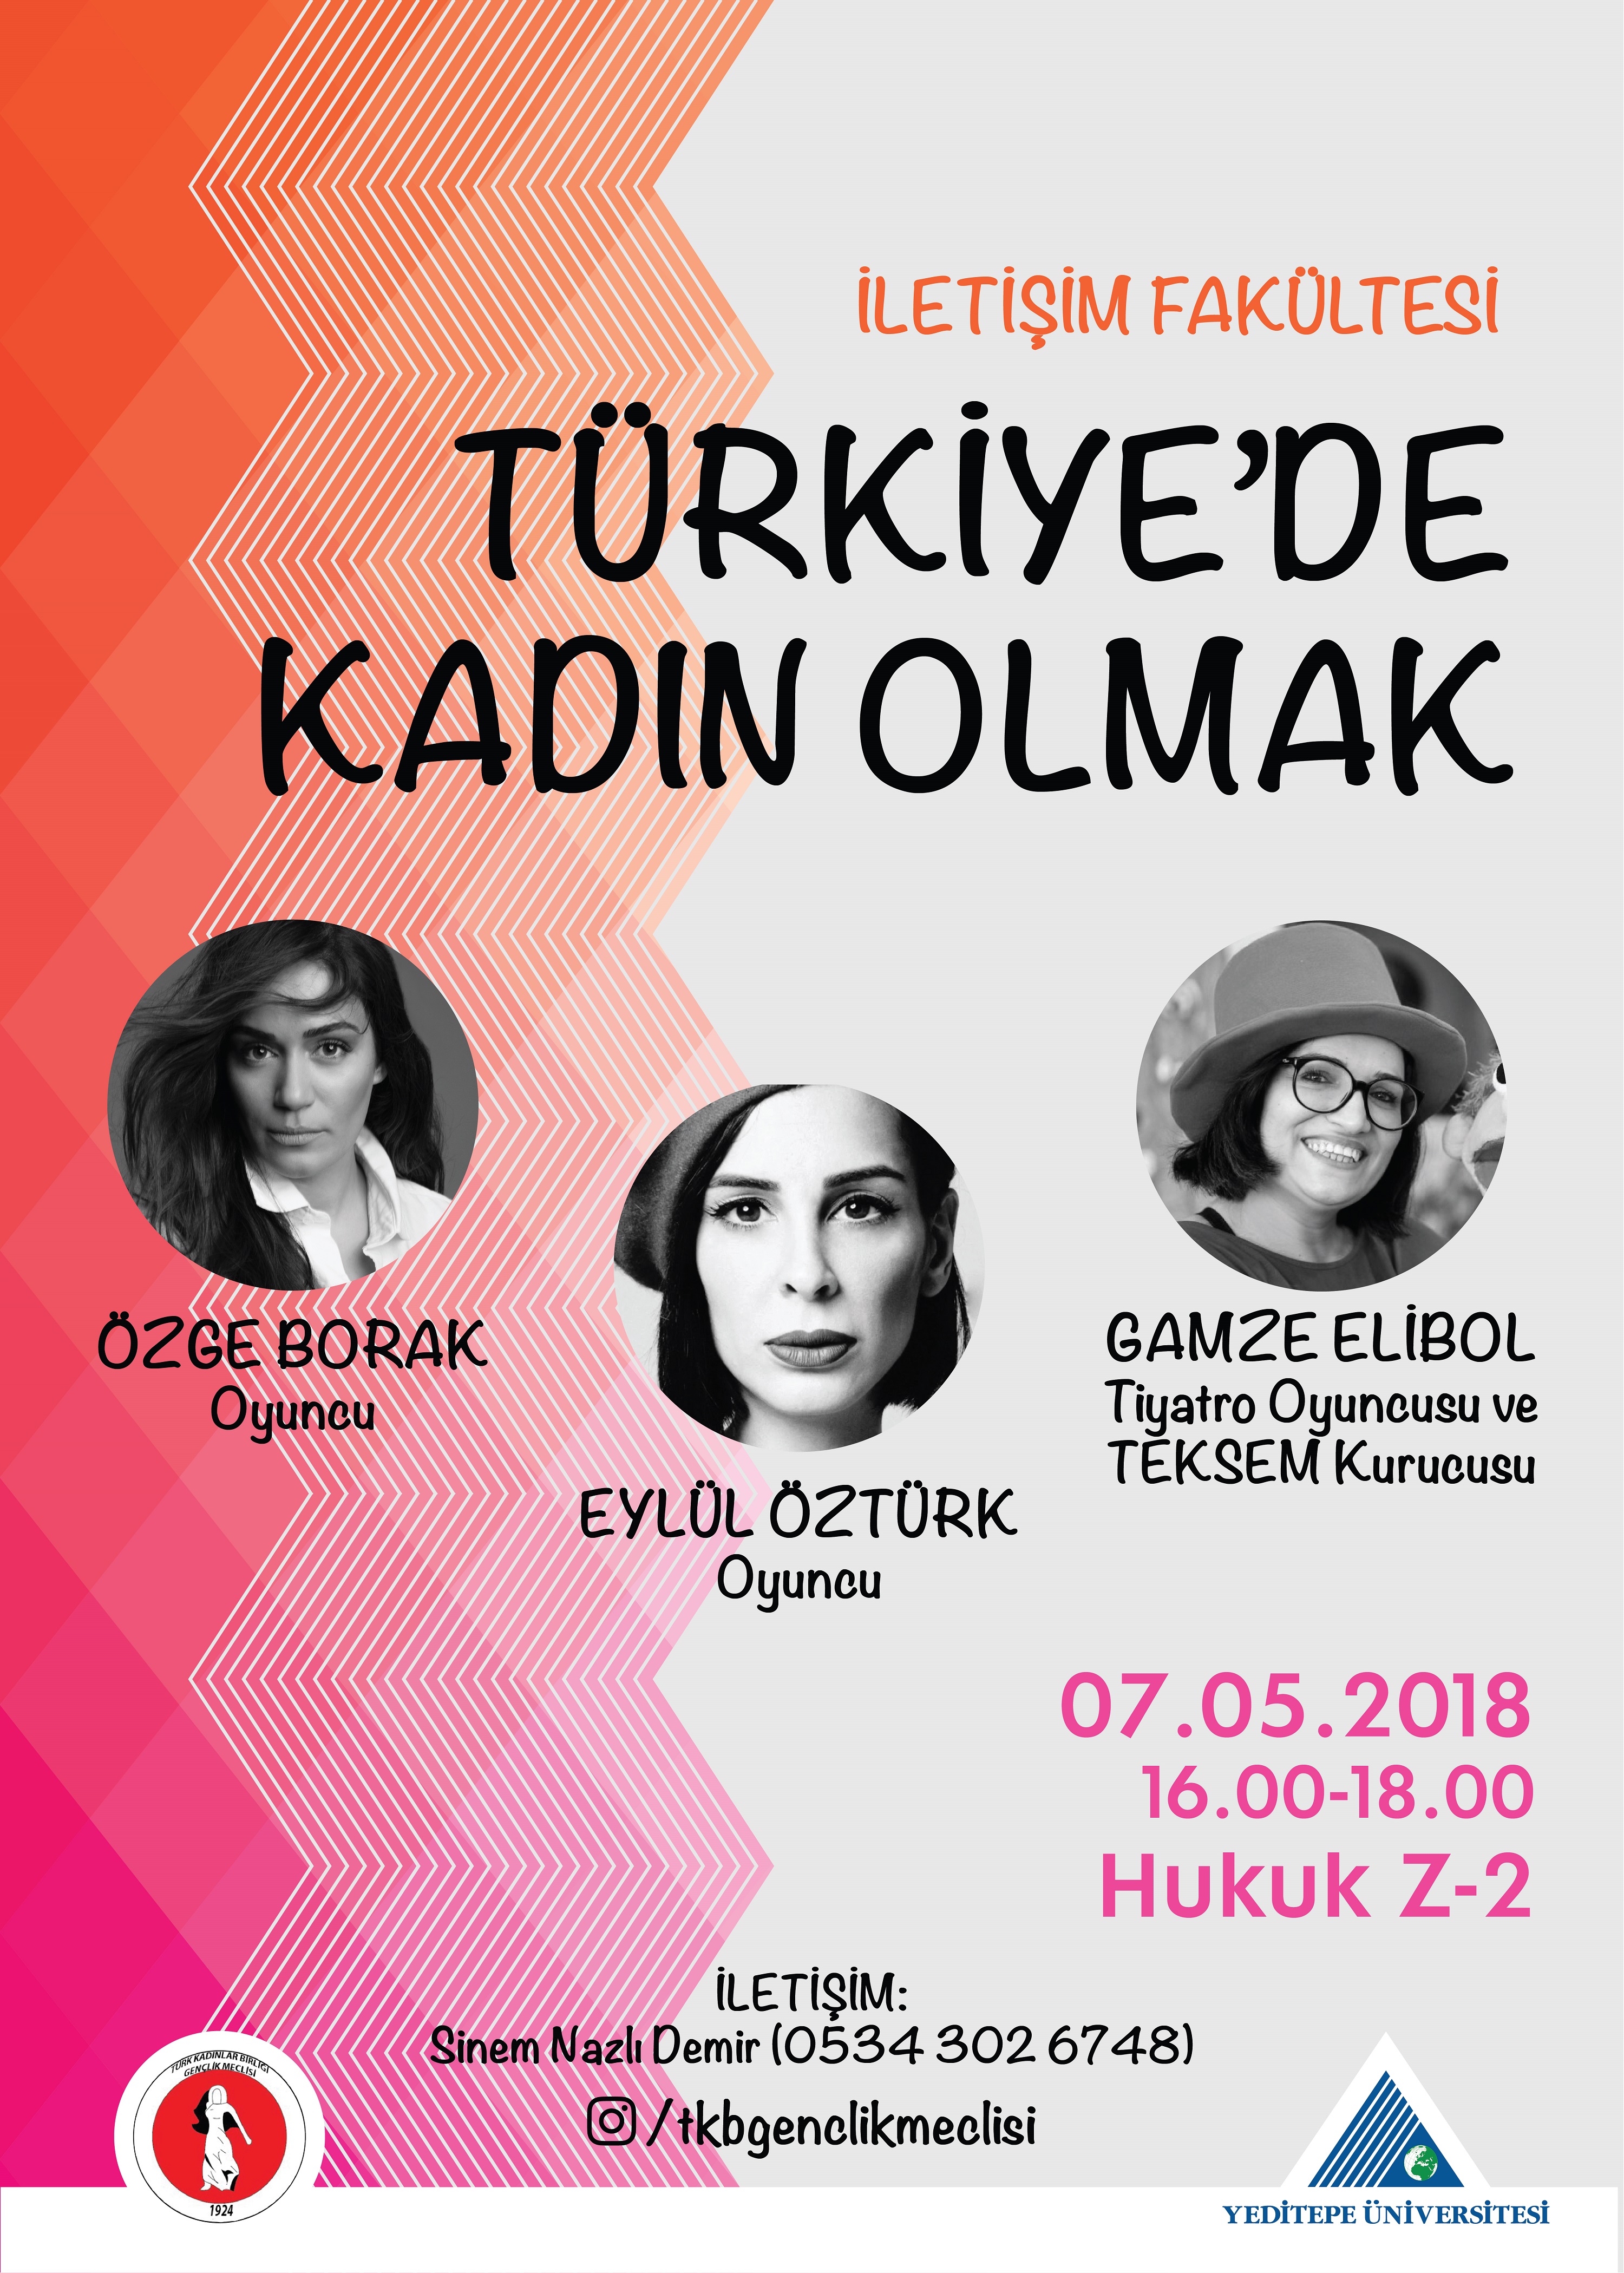 Türkiye'de Kadın Olmak!